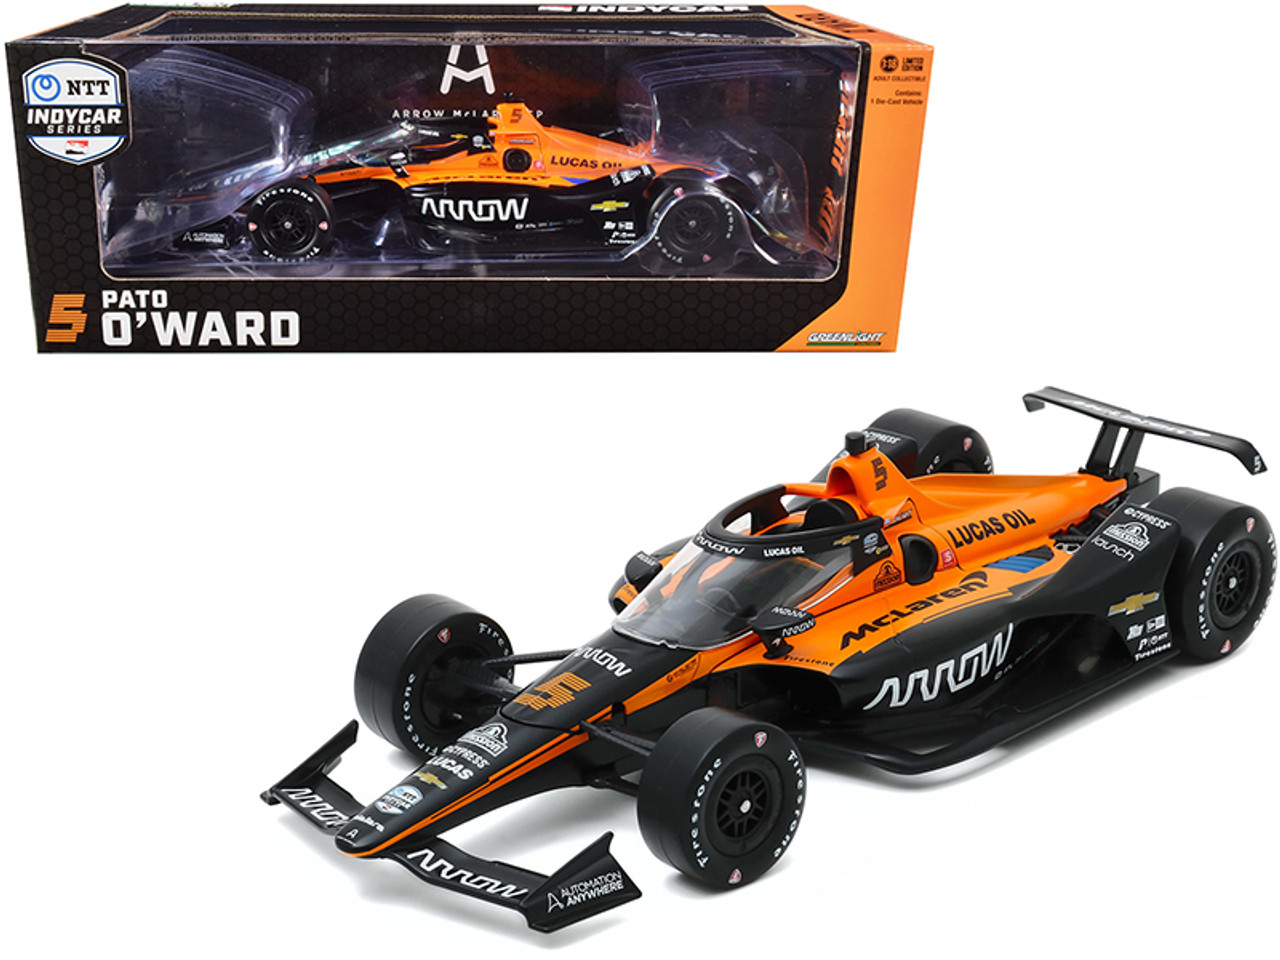 Dallara IndyCar #5 Pato O'Ward "Arrow" Arrow McLaren SP "NTT IndyCar Series" (2020) 1/18 Diecast Model Car by Greenlight